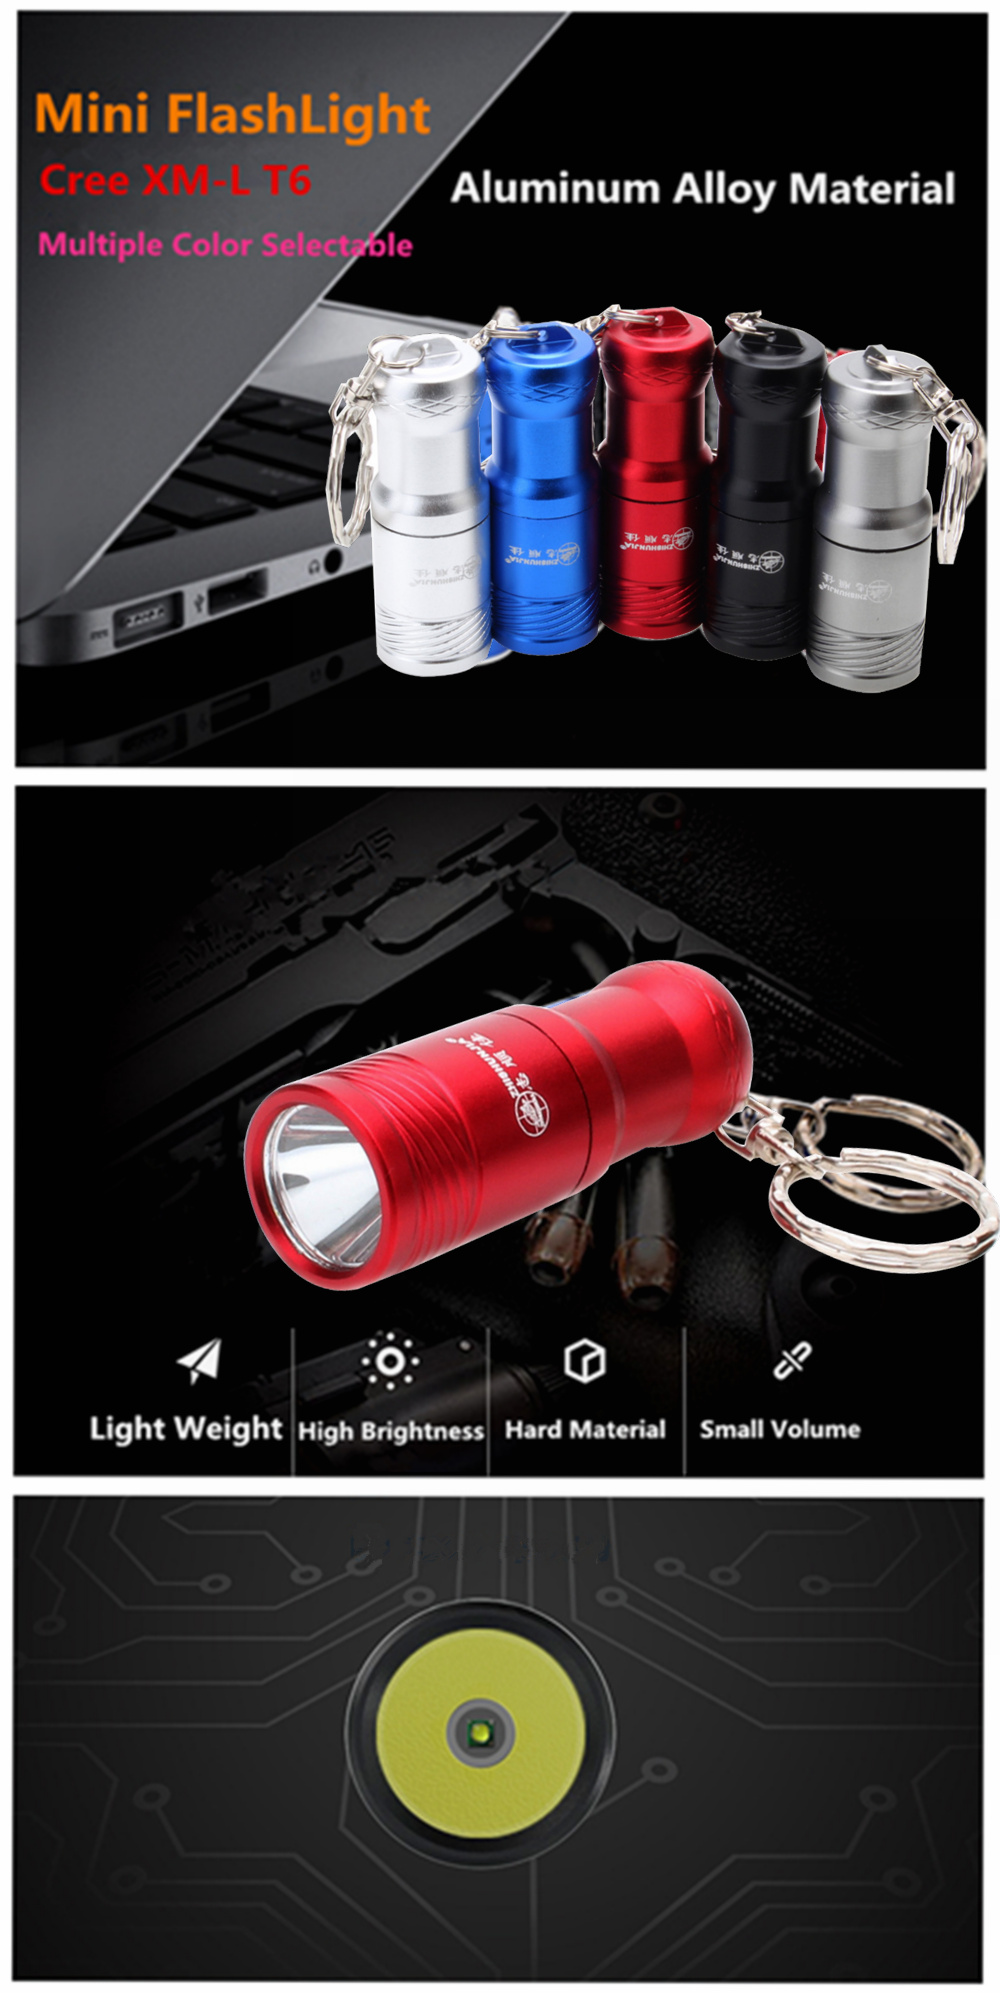 ZHISHUNJIA 1301 CREE XM-L T6 800lm 3-Mode Cool White Flashlight